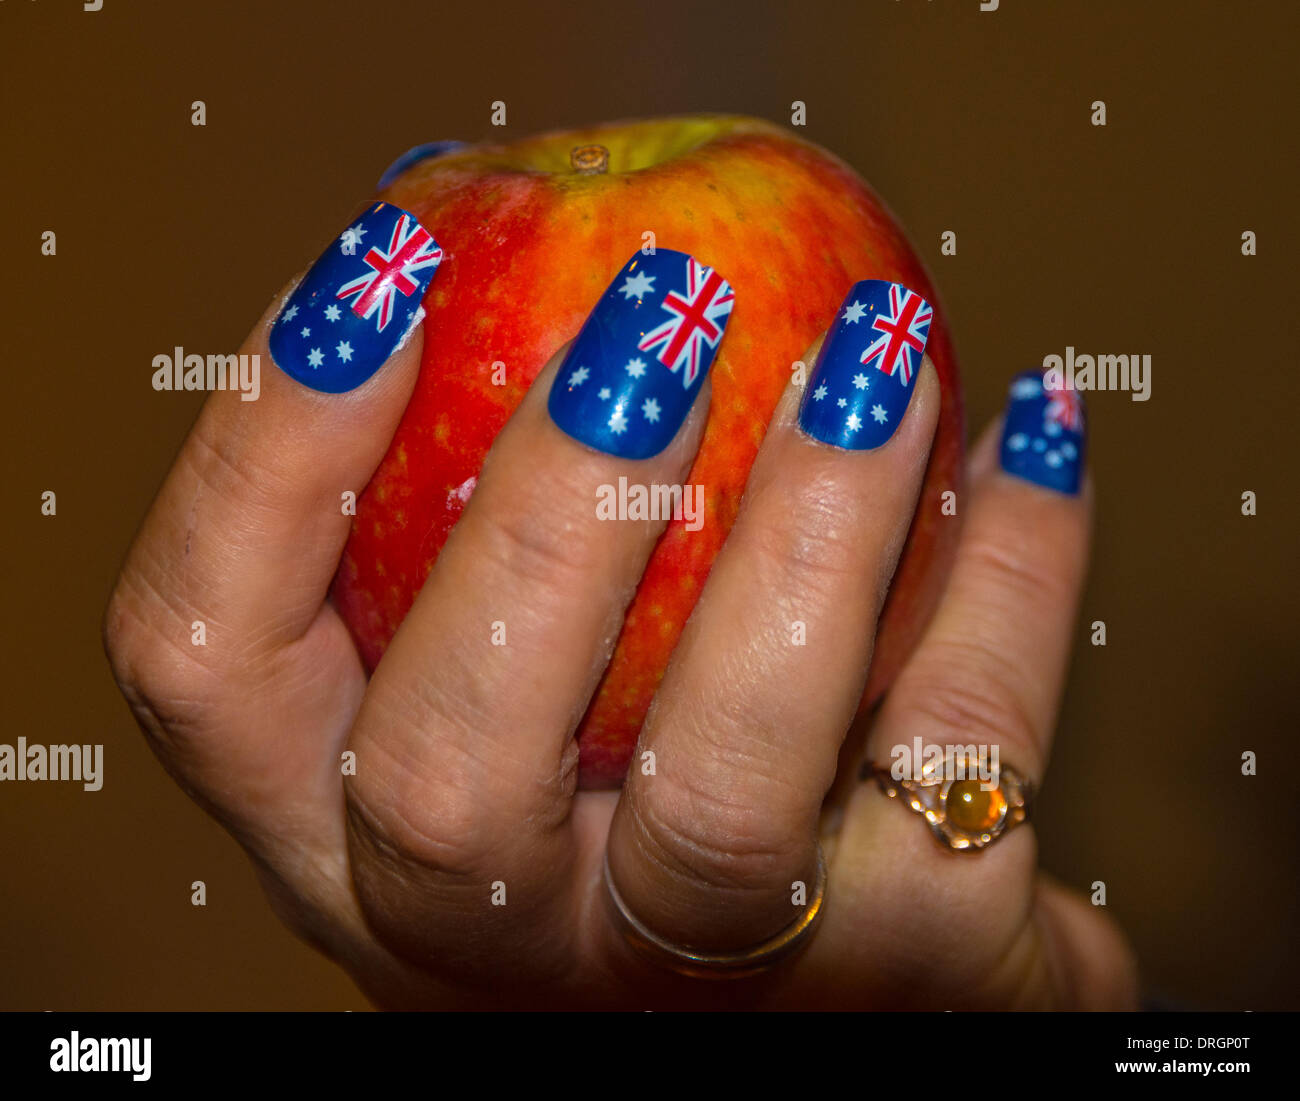 Hand holding apple avec nail art du drapeau australien avec le modèle de presse Banque D'Images